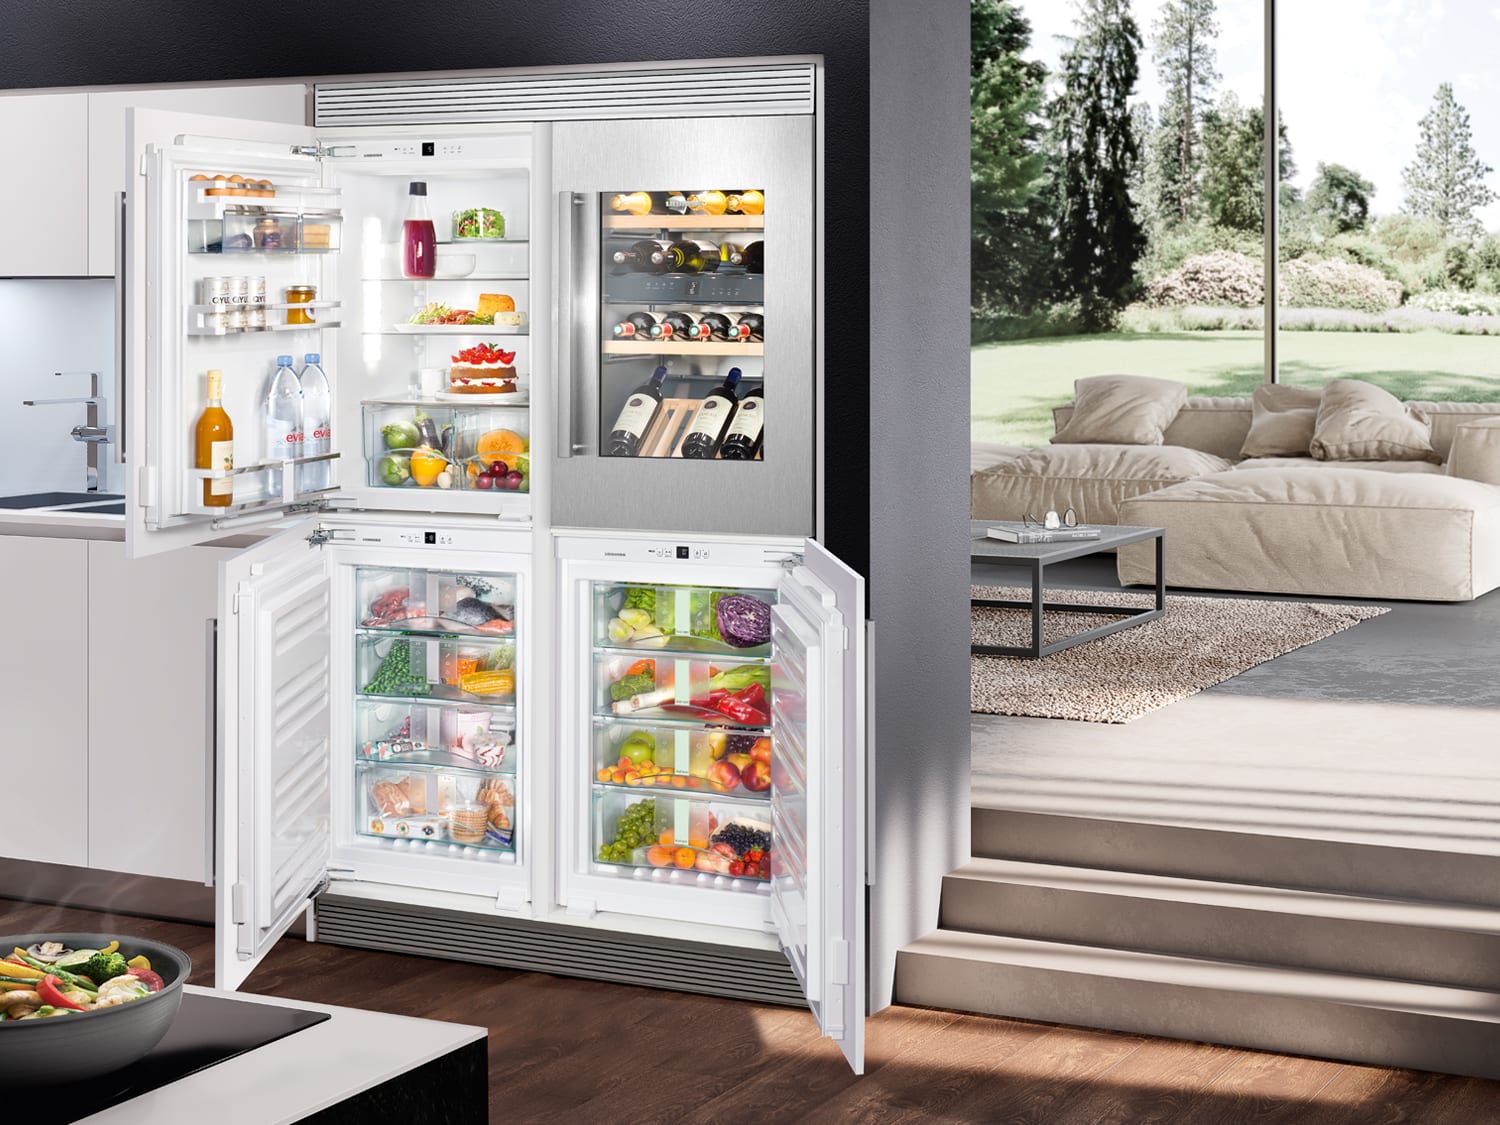 Холодильники новые модели. Холодильник Либхер двухдверный. Холодильник Liebherr Side by Side. Холодильник Либхер с винным шкафом. Встраиваемый холодильник Liebherr с зоной свежести.